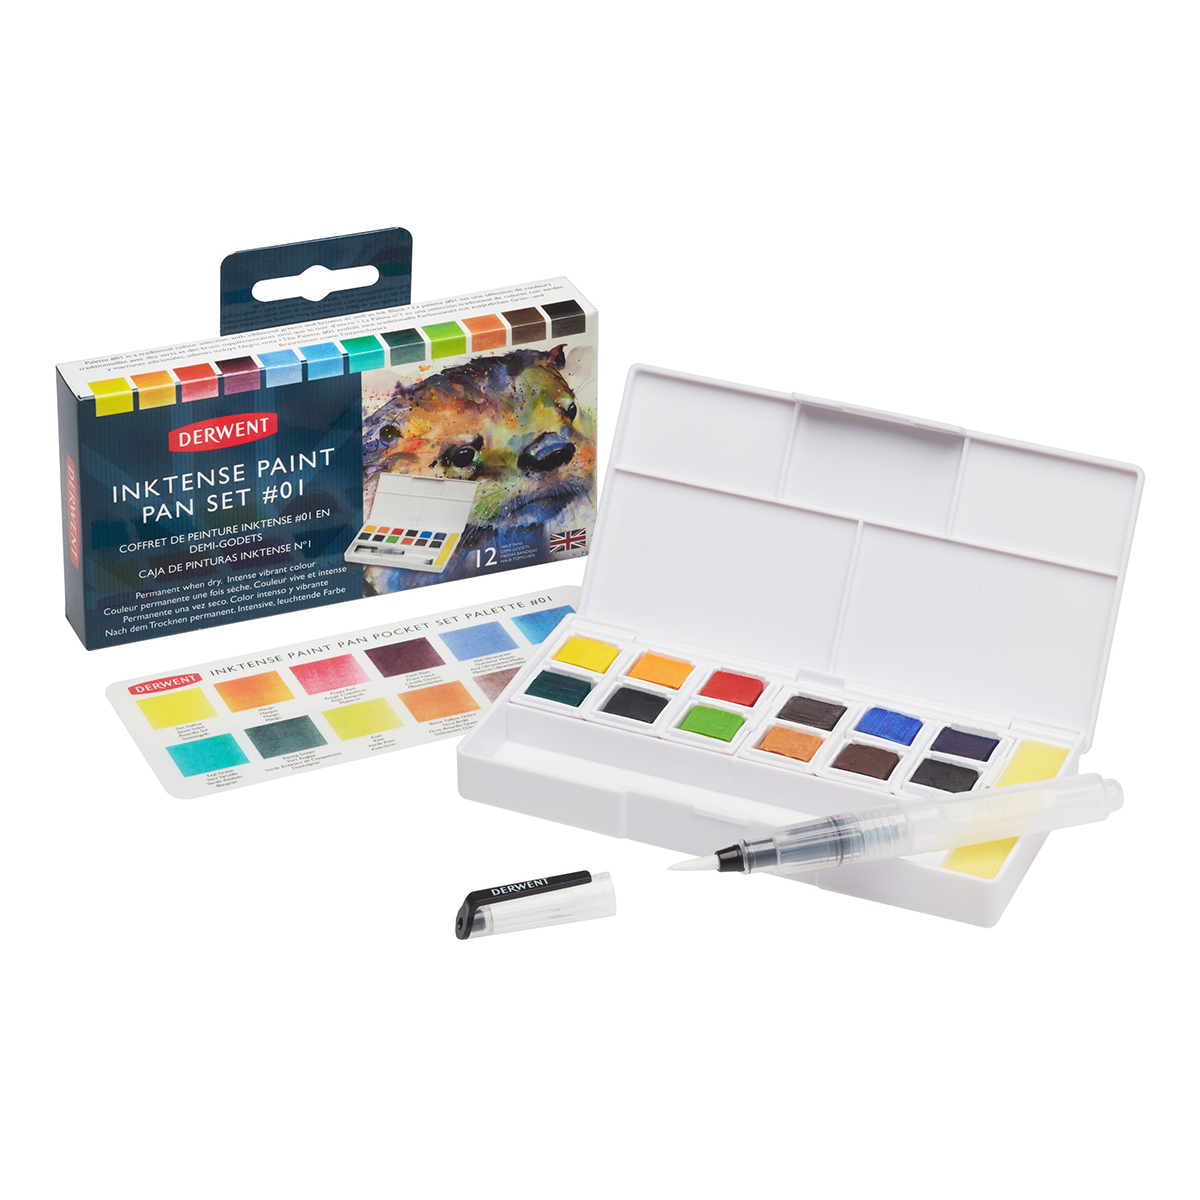 Inktense Paint Pan Set 12 1/2-Näpfe in der Gruppe Künstlerbedarf / Farben / Aquarell bei Pen Store (128192)